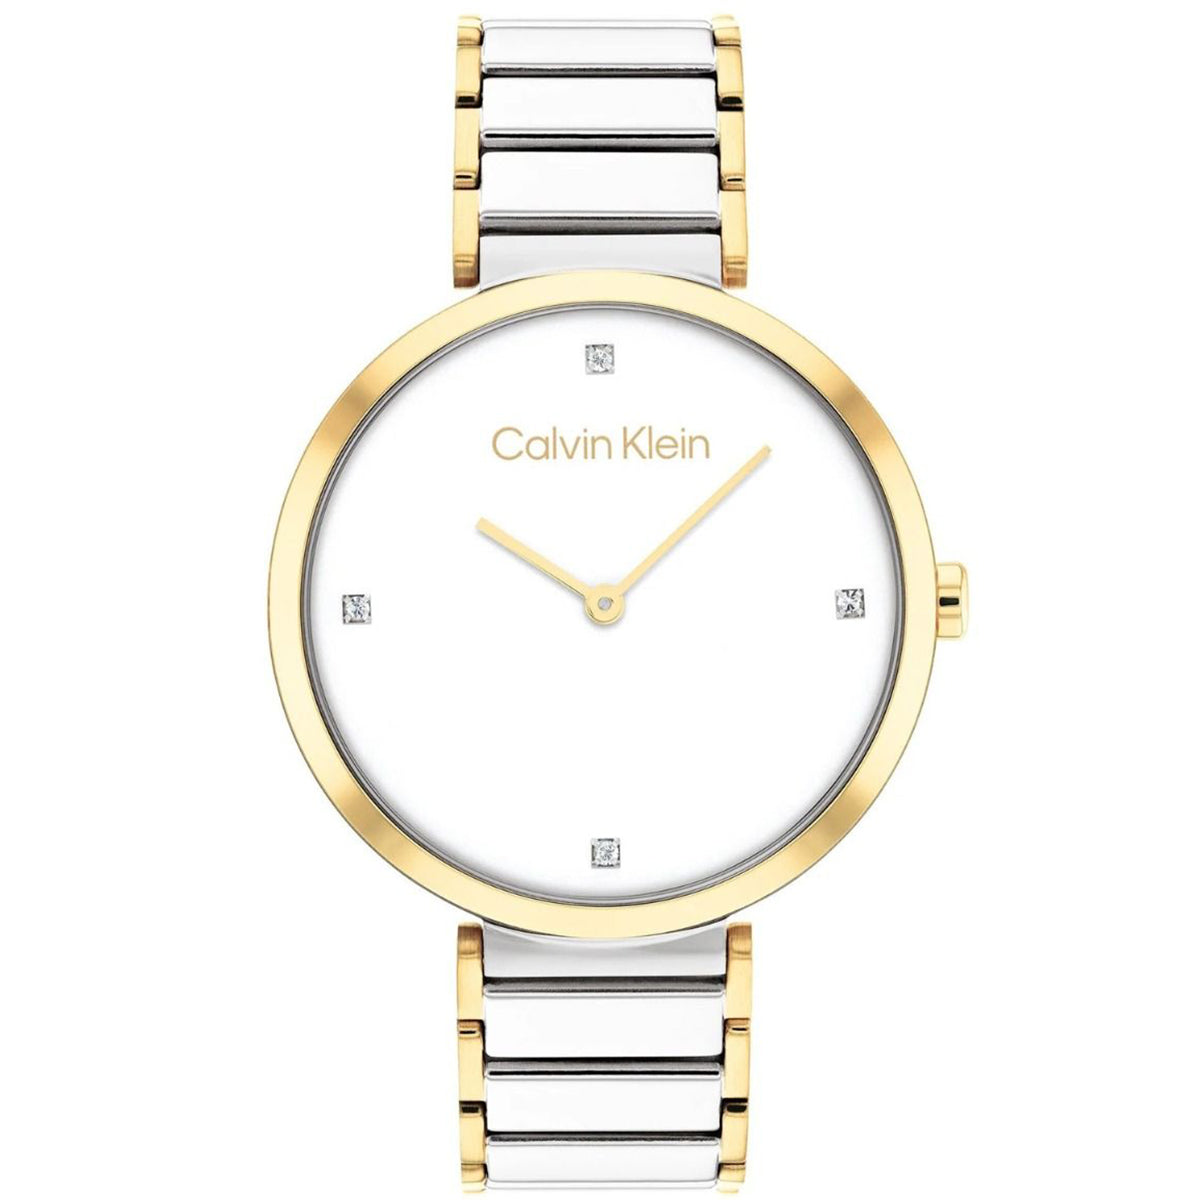 Calvin Klein - Timeless - 25200134